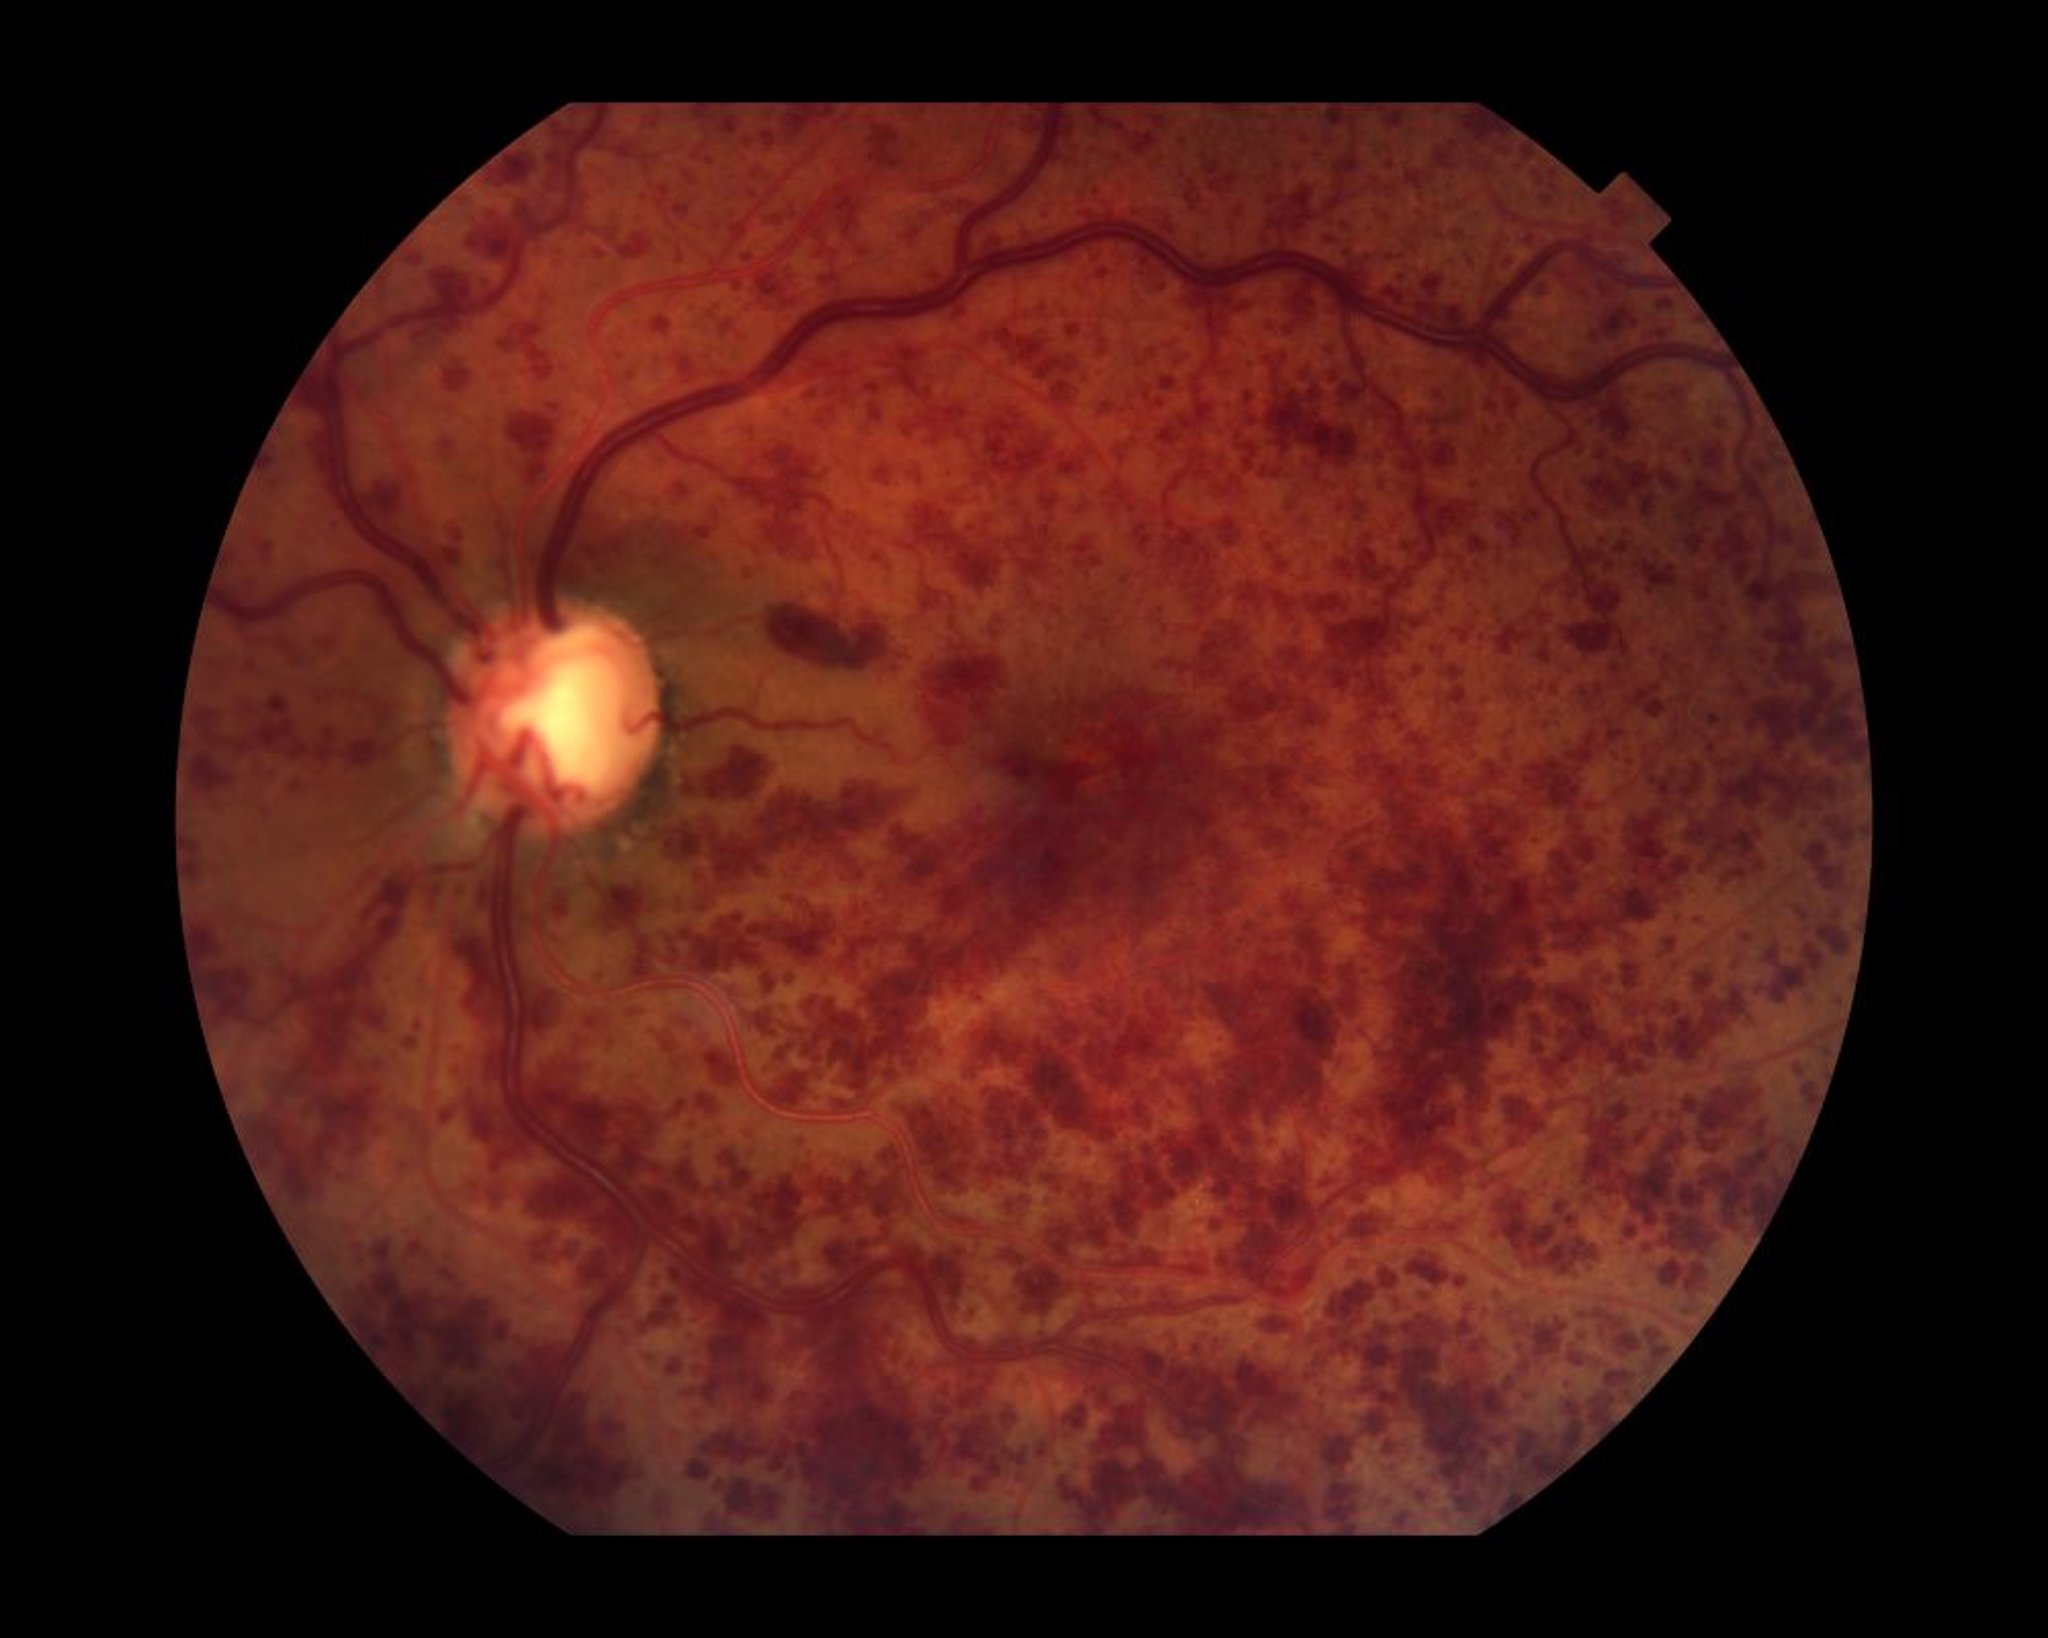 Oclusión de la vena central de la retina